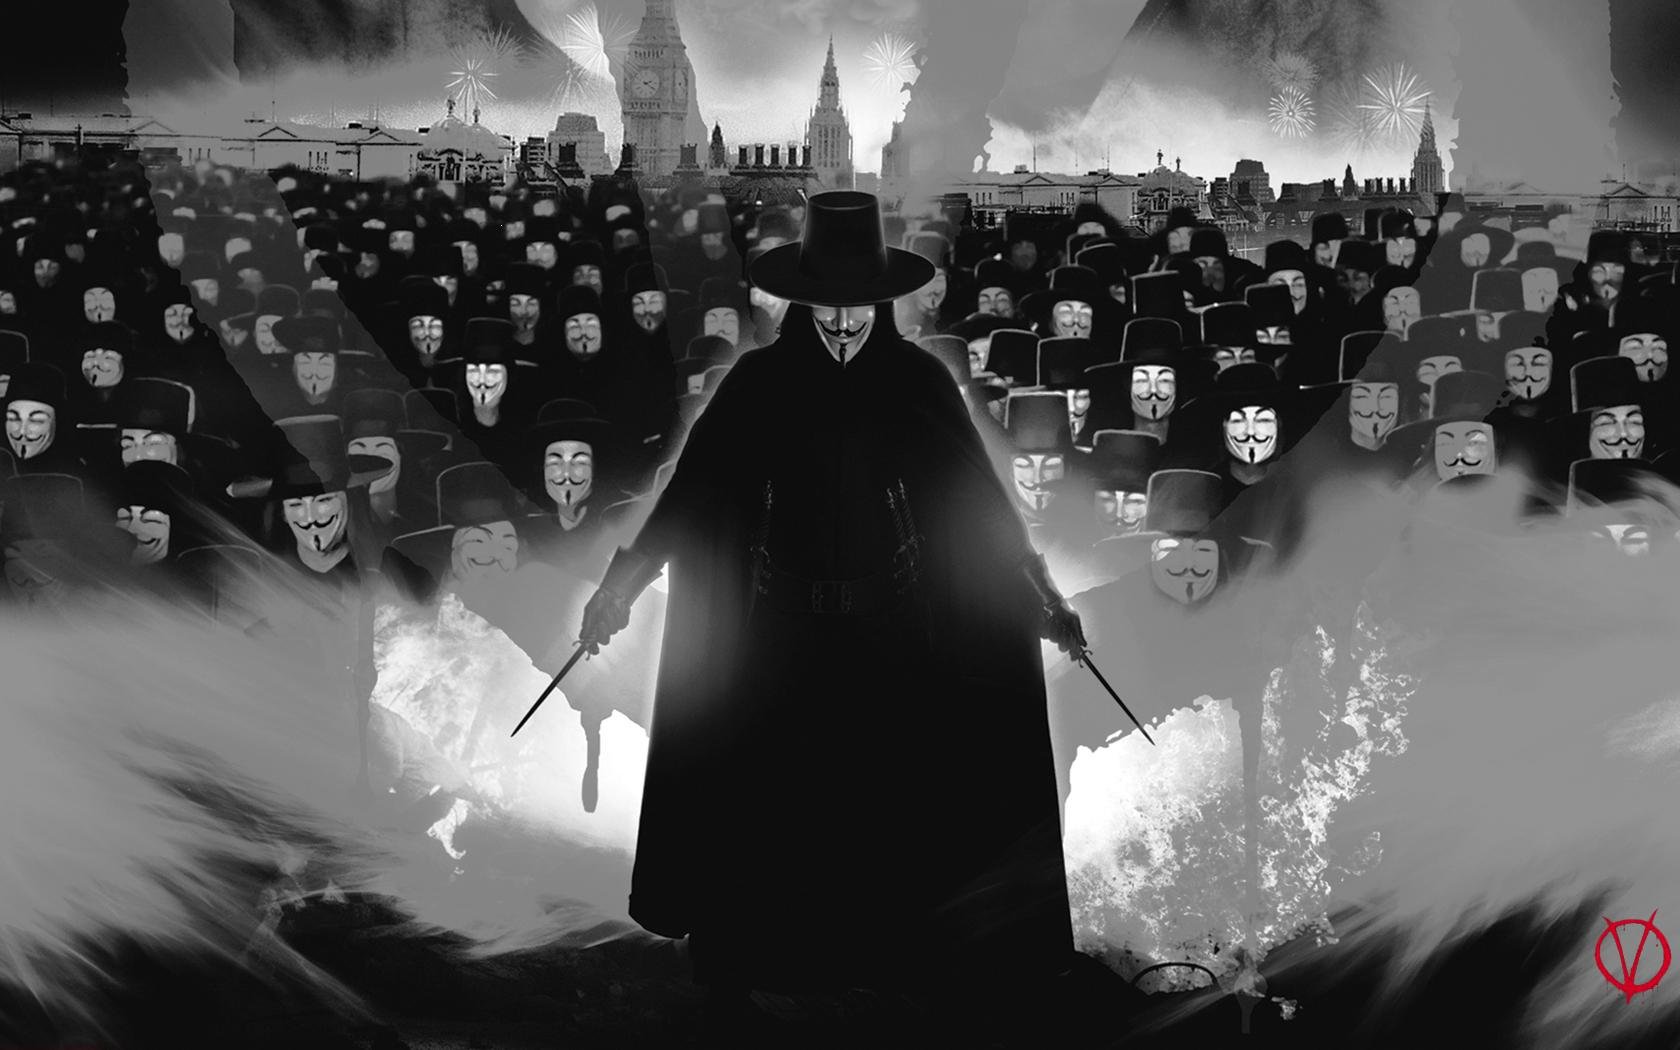 v, For, Vendetta Wallpaper